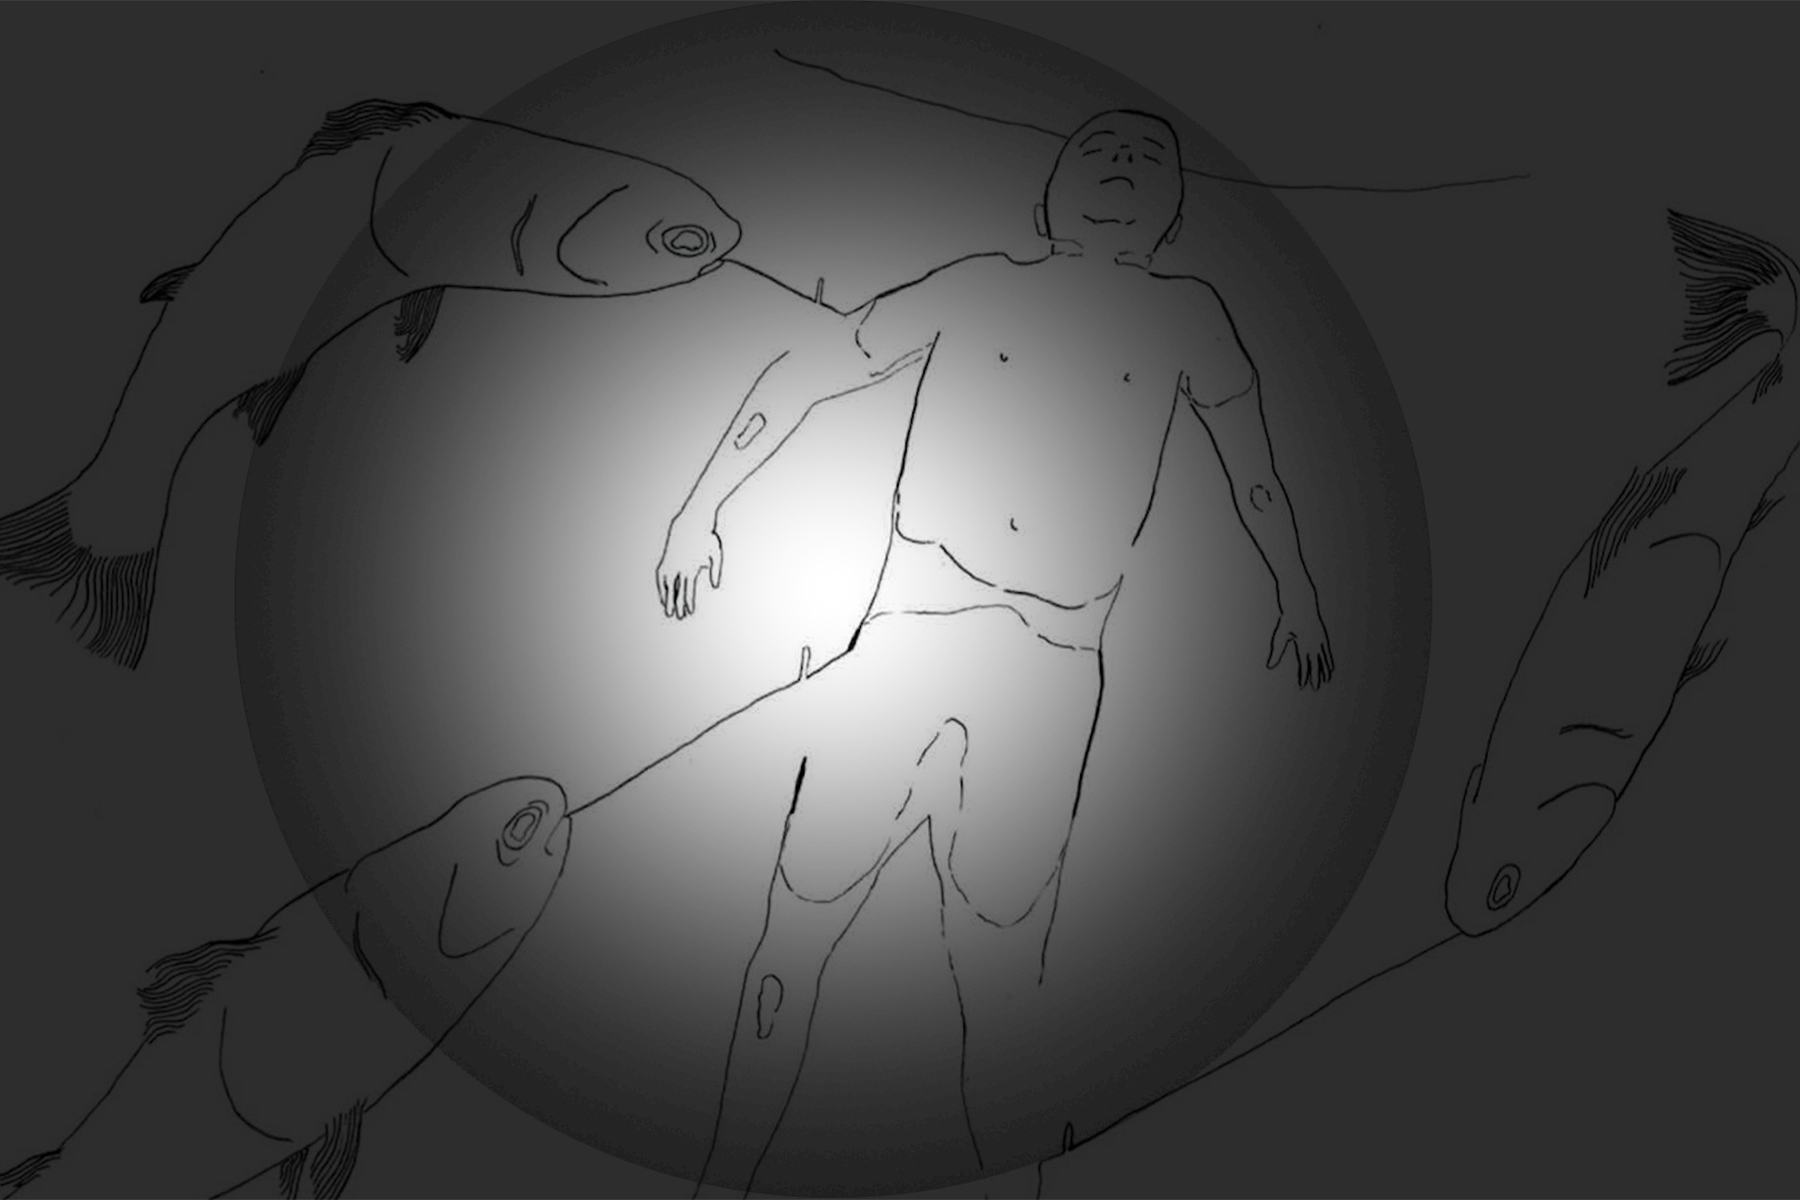 Ein Bild mit grauem Hintergrund, auf dem Fische und ein Mensch in der Mitte gezeichnet sind. Die Mitte des Bildes wird hell beleuchtet.